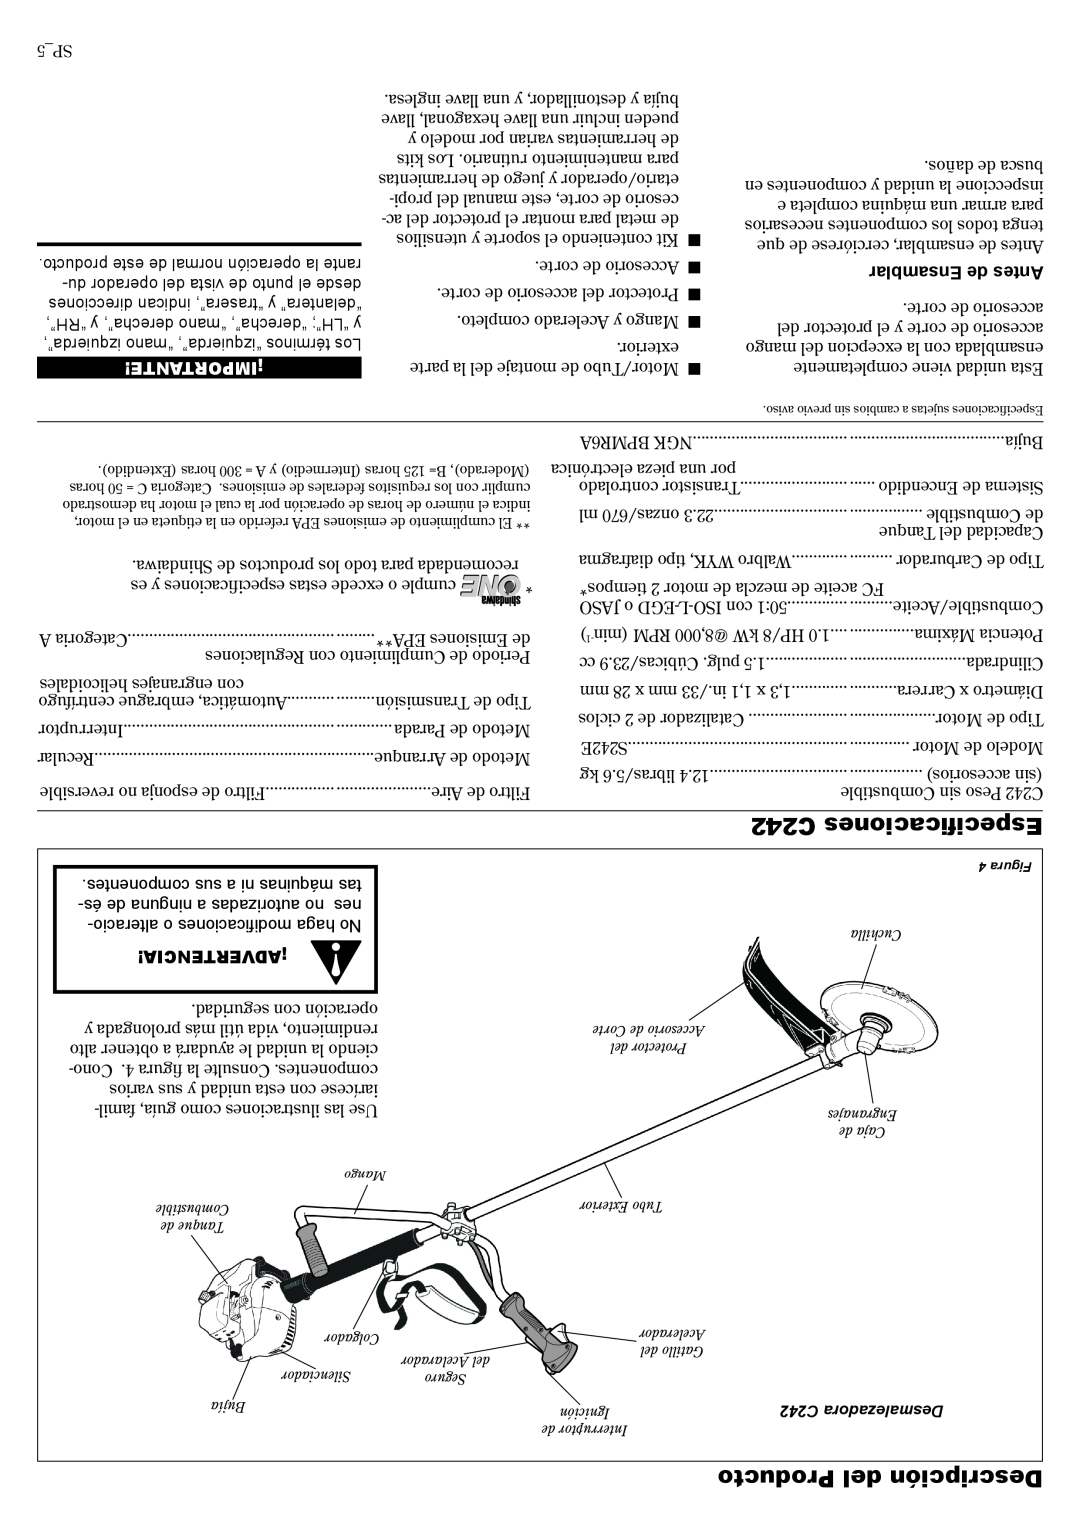 Shindaiwa 81644 manual C242 Especificaciones, Producto del Descripción, Ensamblar de Antes, ¡Importante, ¡Advertencia 